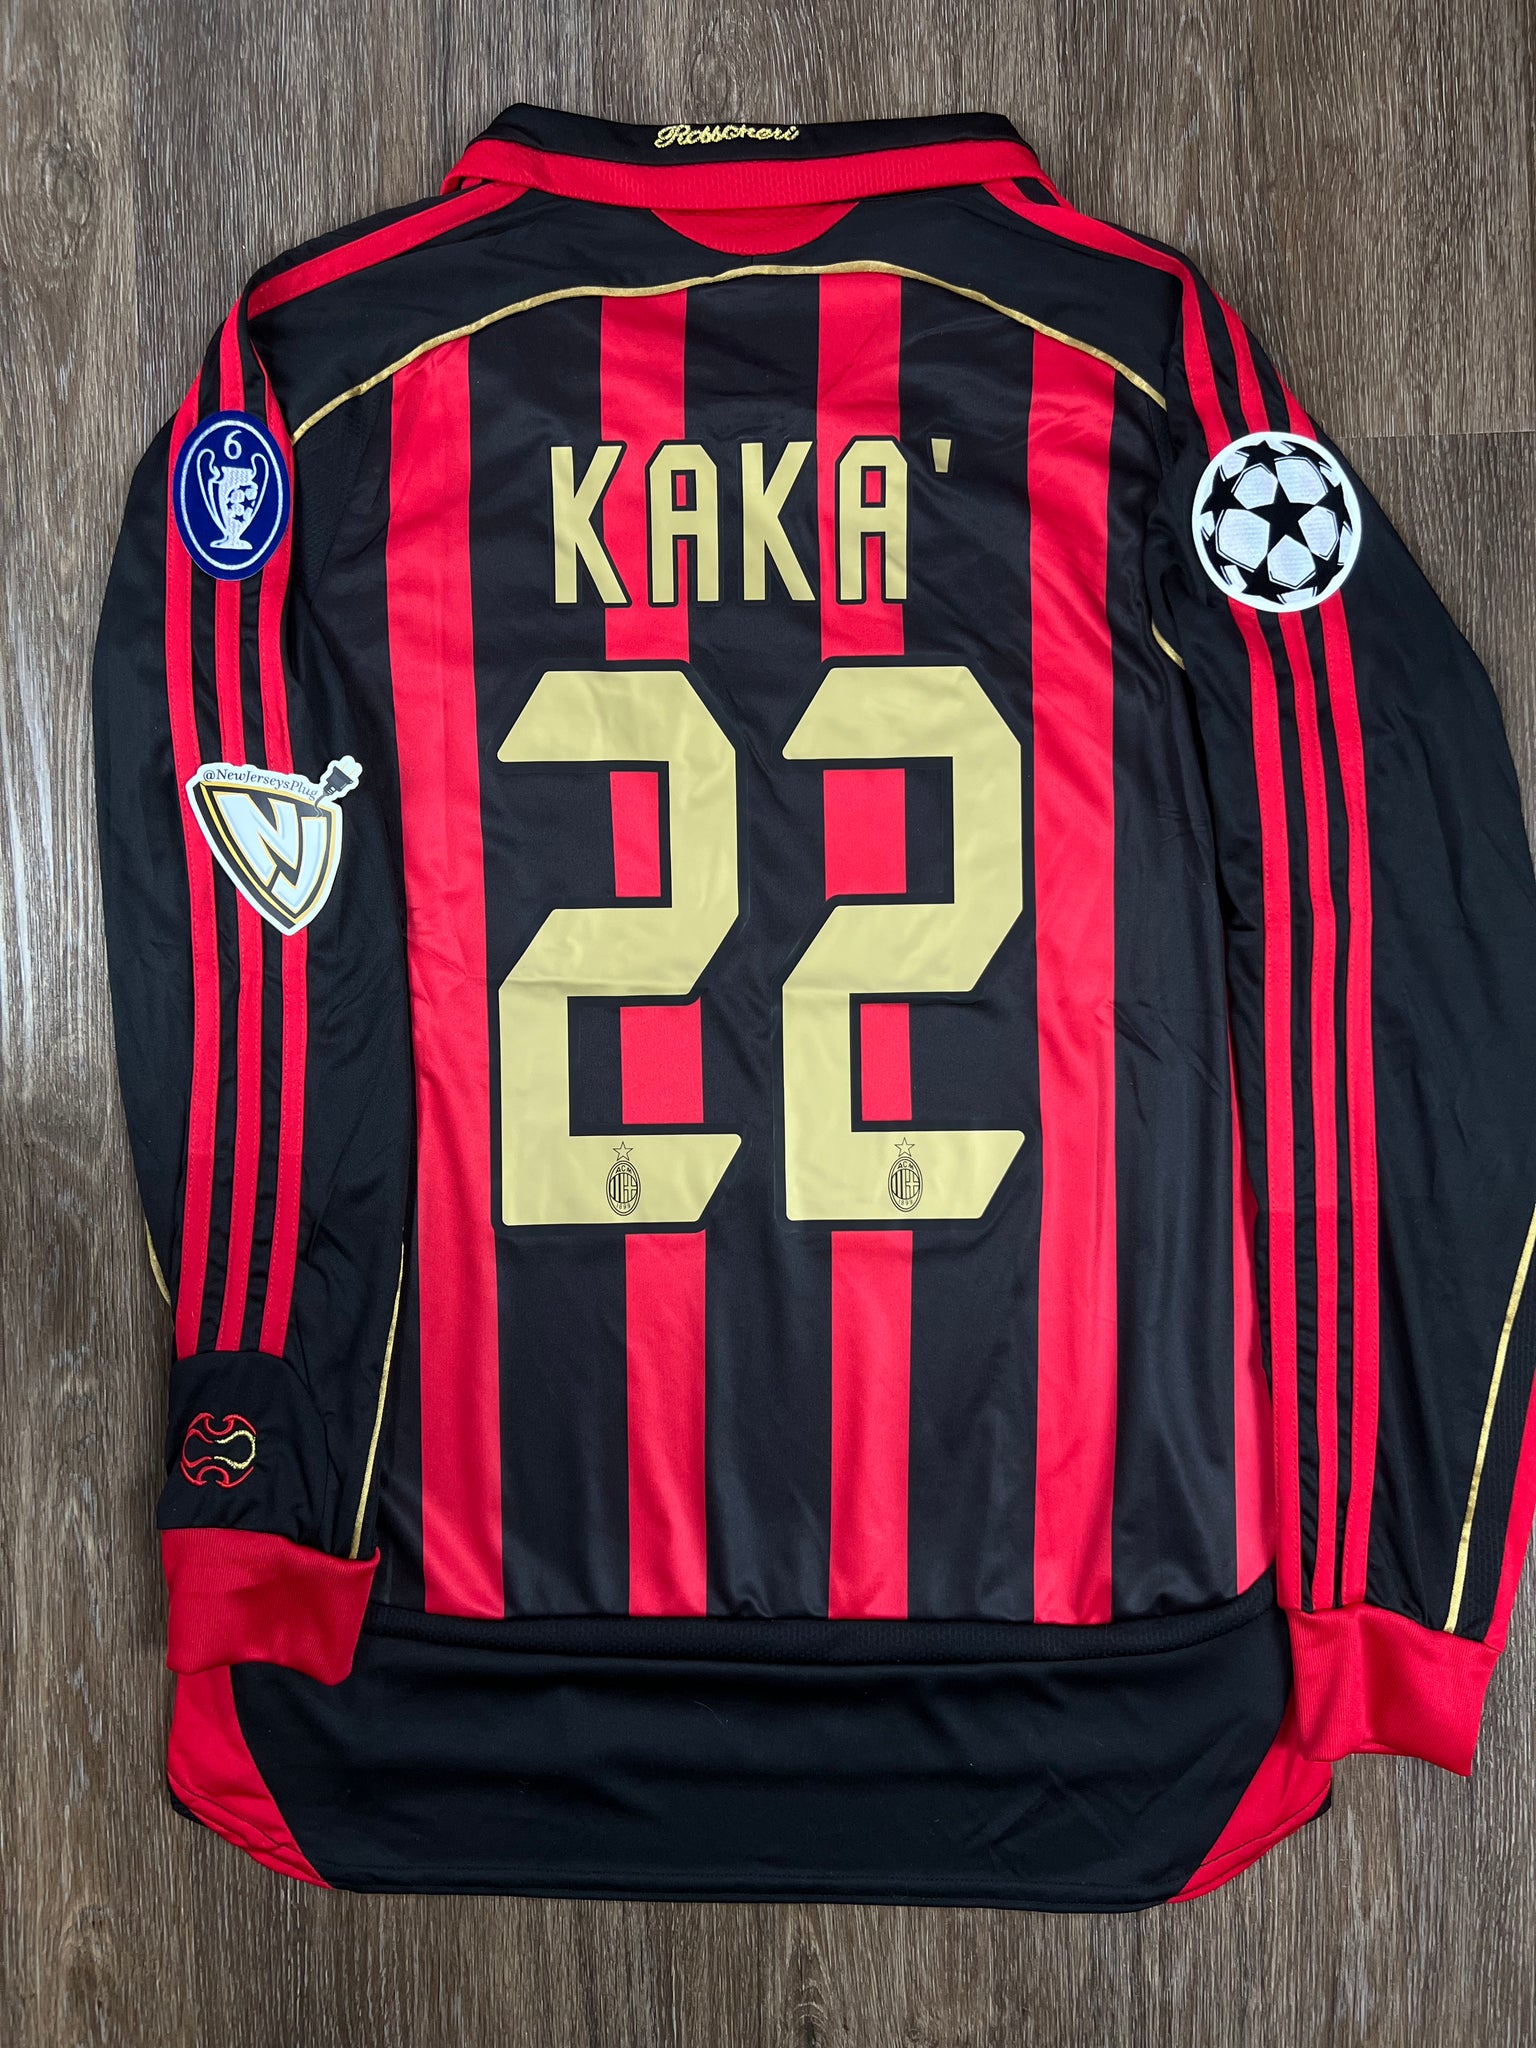 AC Milan #22 Kaka Jersey Size XL